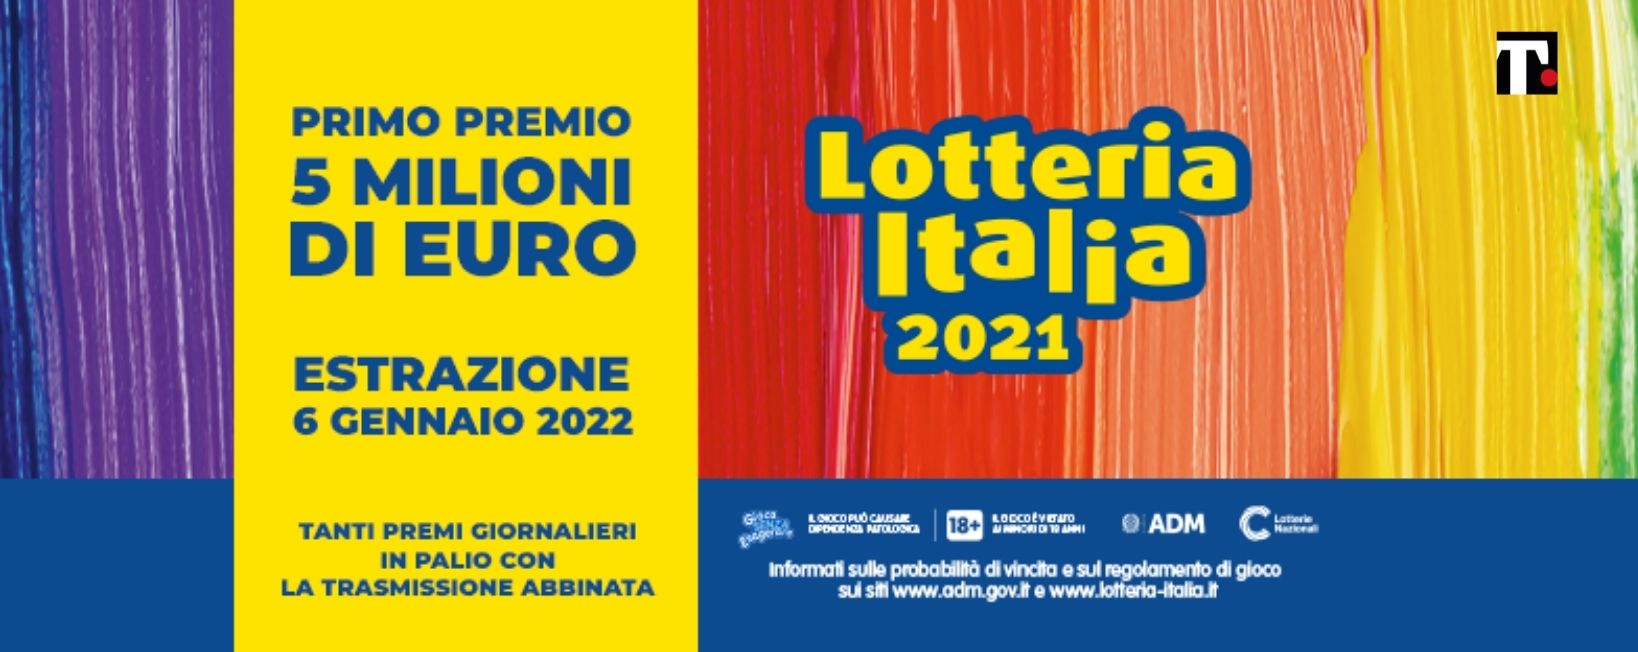 lotteria italia come funziona